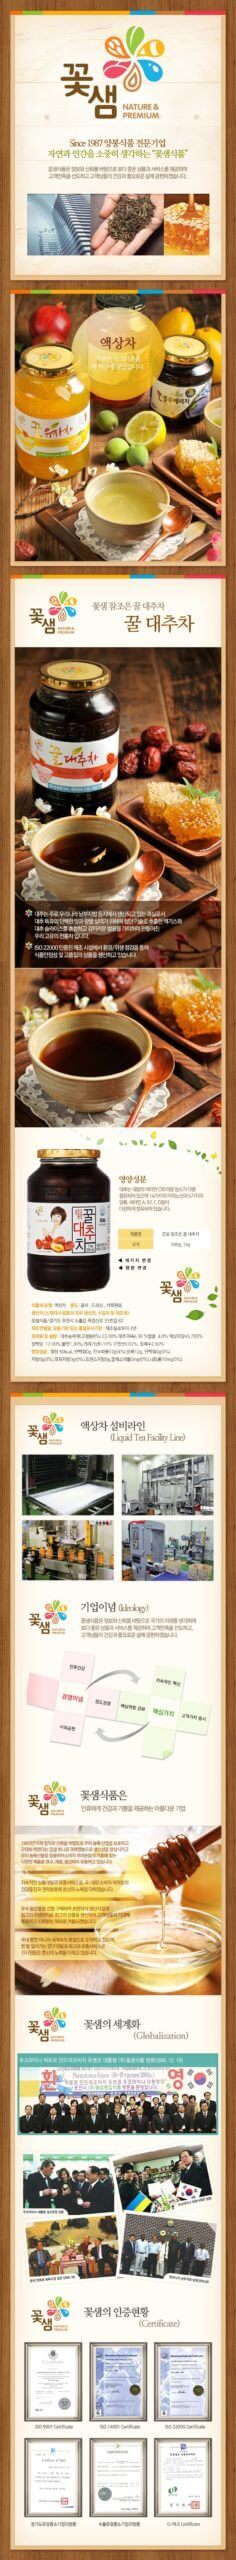 韓國食品-[Kkohshame] 蜂蜜紅棗茶 1kg